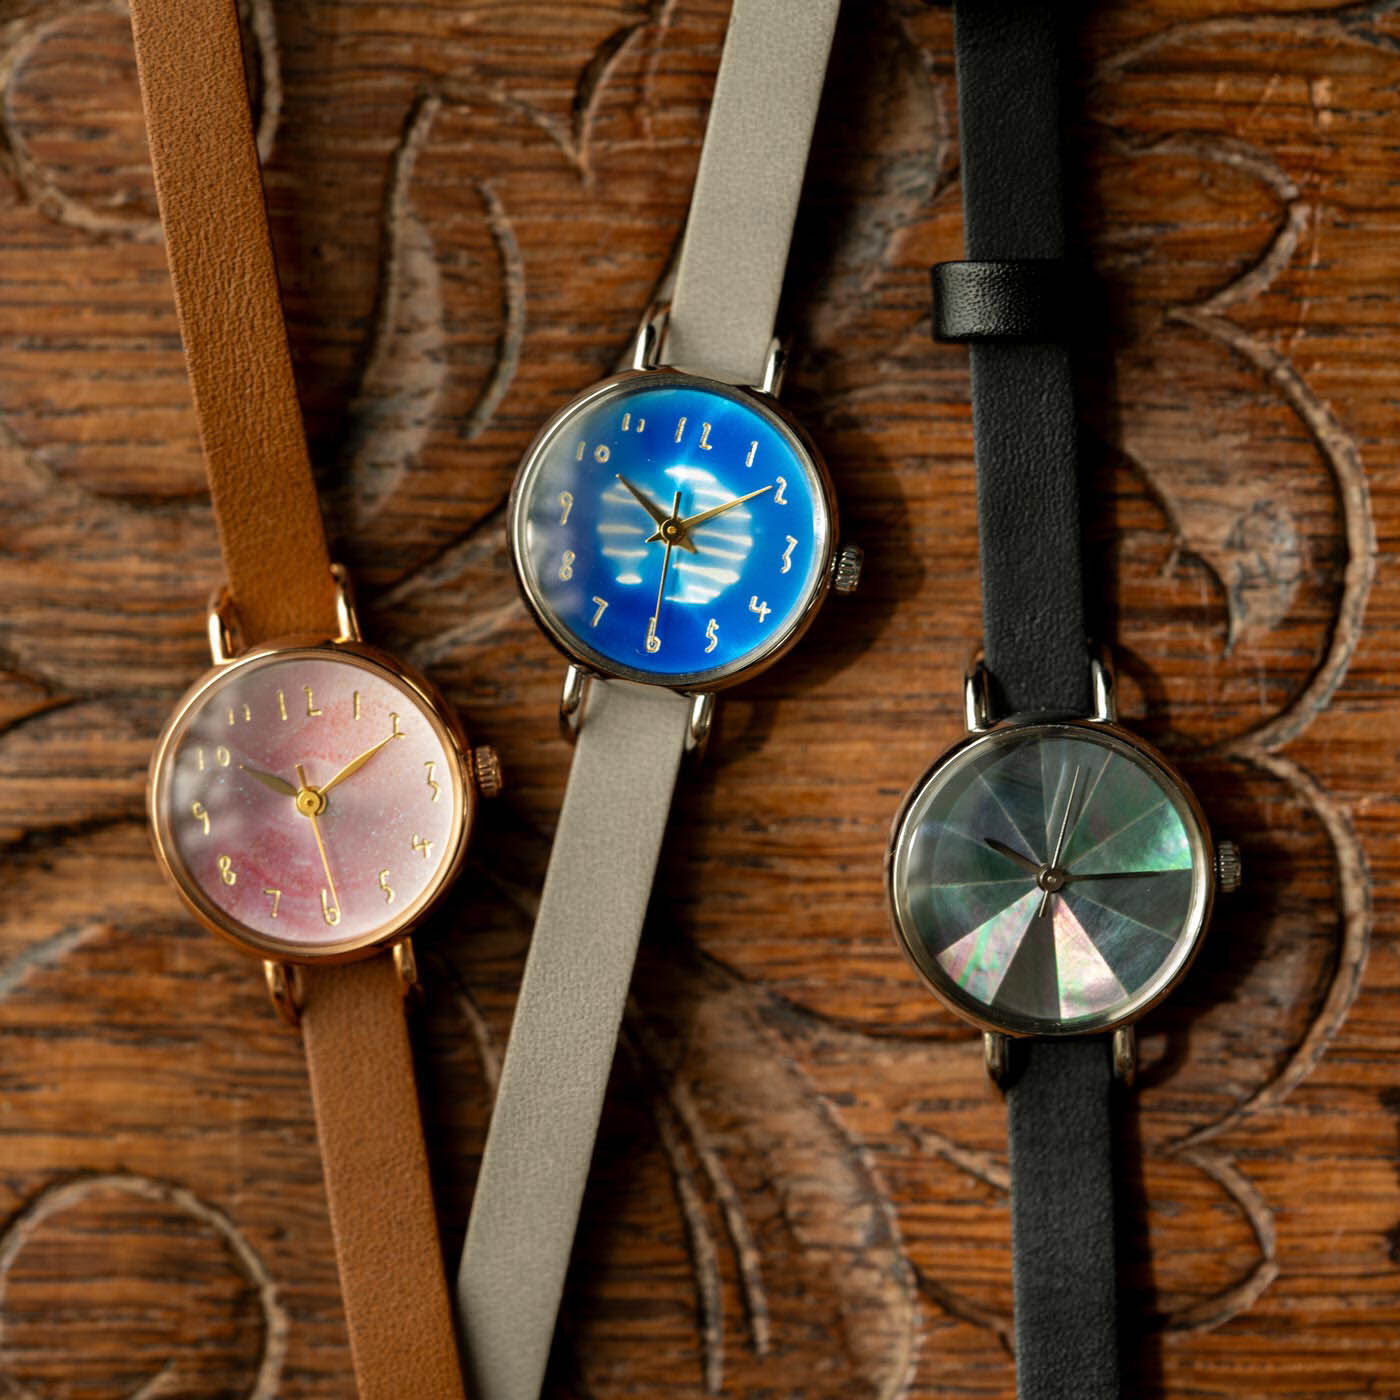 ＆Stories|金沢の時計職人が手掛けた 夜に舞う櫻吹雪に見惚れる腕時計〈ブラウン〉|金沢の時計工房からこの春登場する腕時計は、水面に映る月を閉じ込めた「朧月」（中央・別売り）、螺鈿細工の技術を生かした美術品のような「黒蝶貝」（右・別売り）のスペシャルモデルぞろい。小さな文字盤に表現されたアートを、この機会にぜひ。